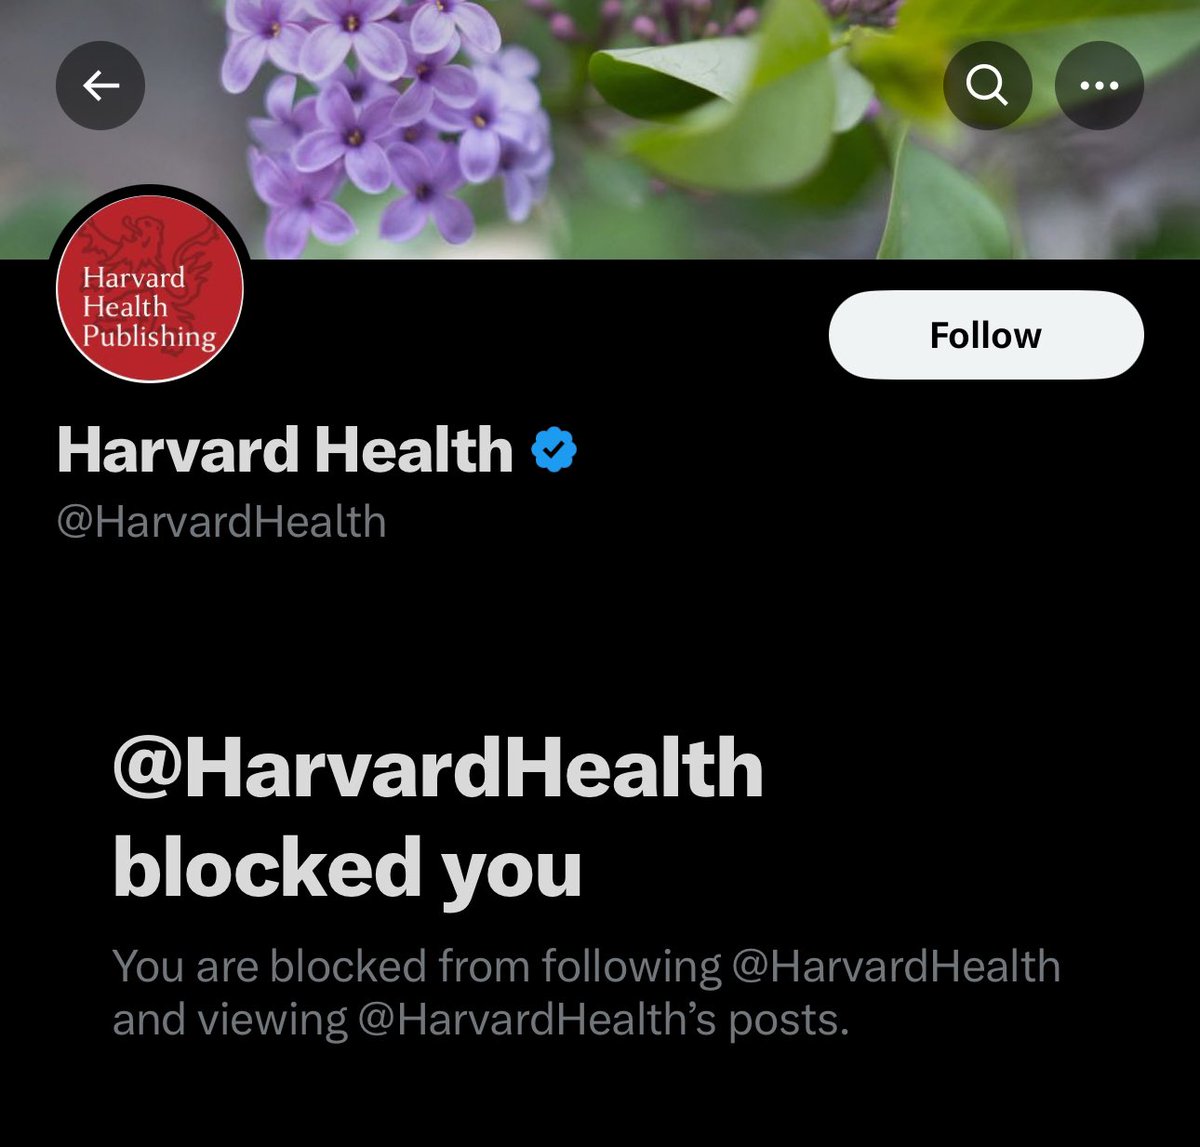 Leider blockieren mich meine Freunde aus @Harvard und ich weiß nicht warum. Möglicherweise sind sie beleidigt weil ich nicht für sie arbeiten möchte. Ich hoffe Sie kommen bald wieder zur Vernunft.